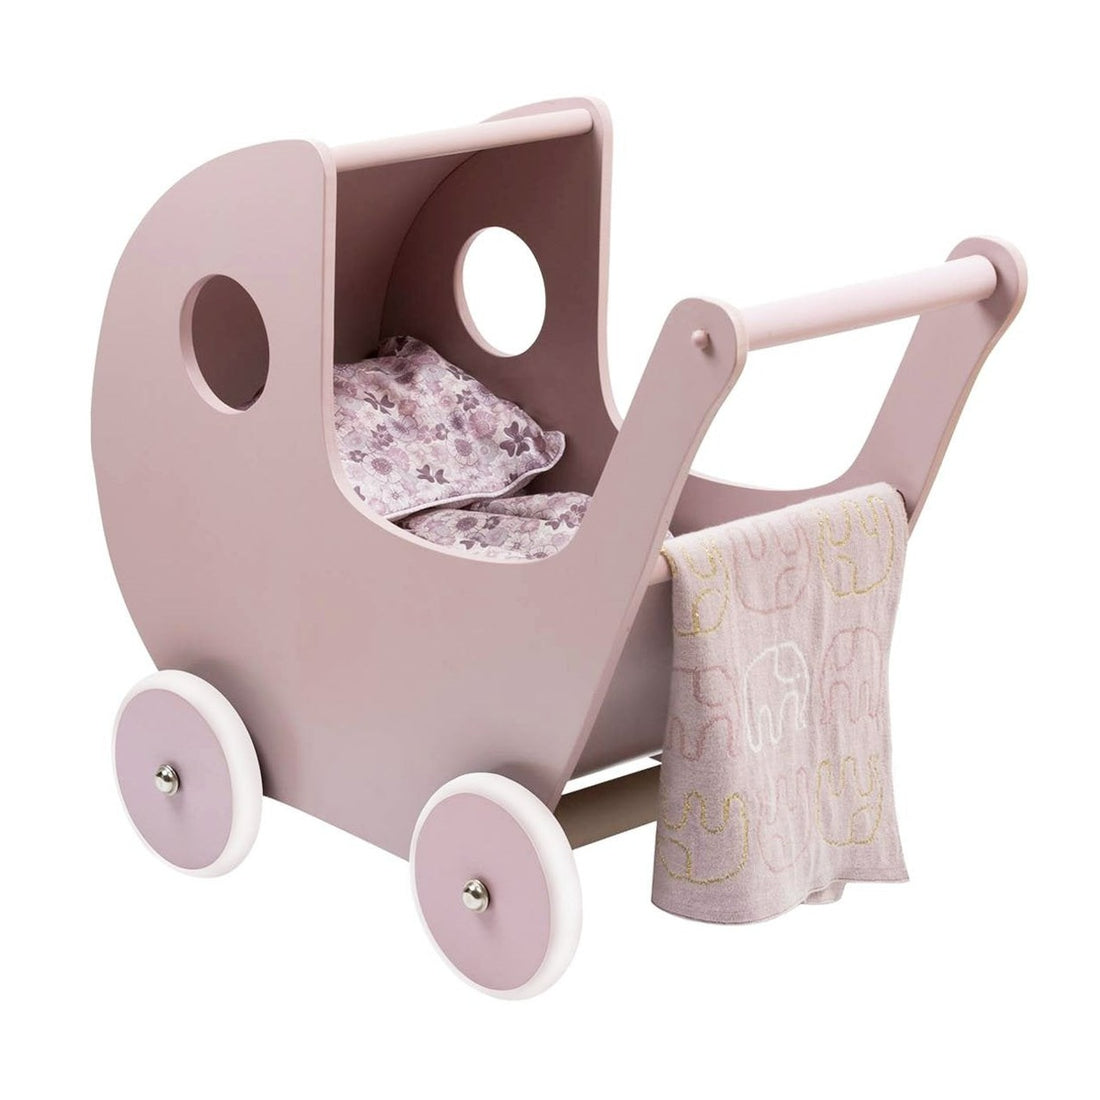 Smallstuff Wooden Stroller in Powder Pink (No MDF)